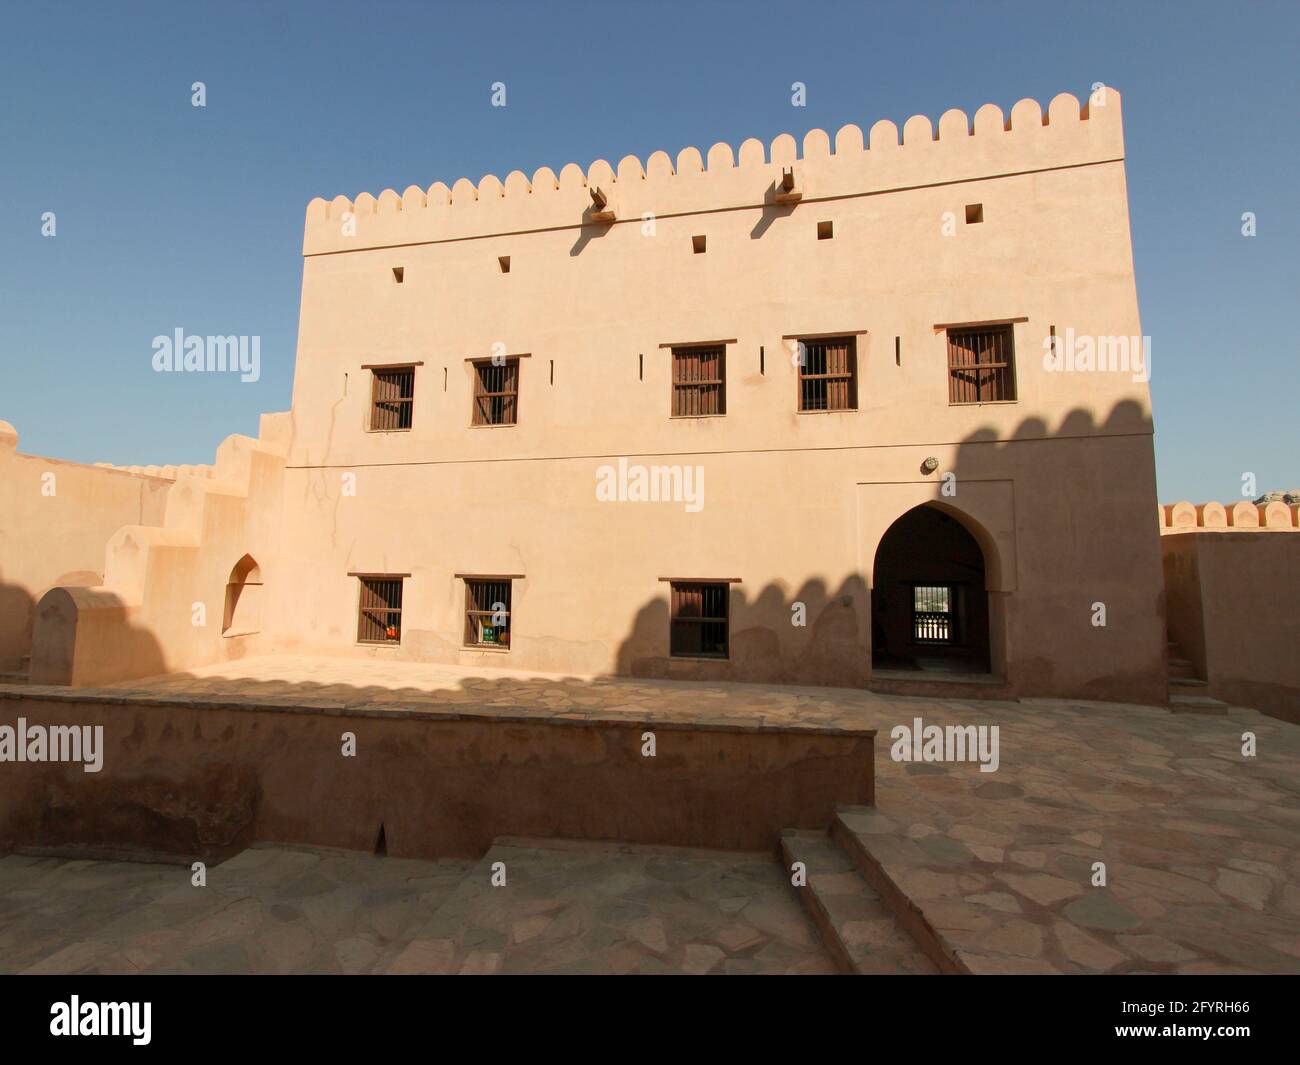 Un des bâtiments en stuc beige. À l'ancien fort Nakhal restauré, le long de la route Rustaq. En Oman. Banque D'Images